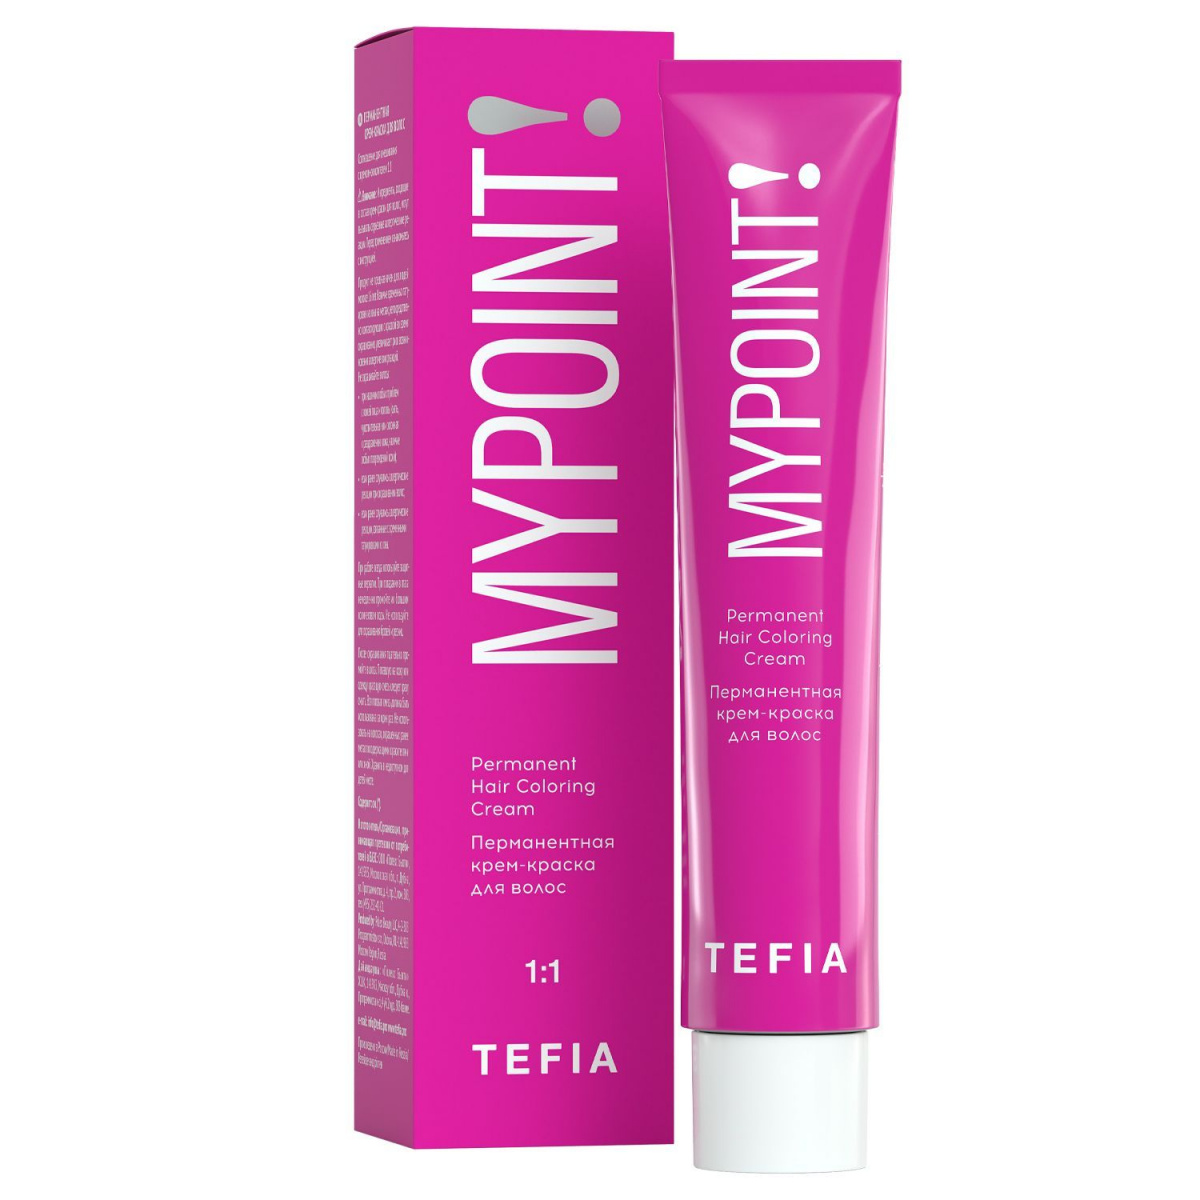 Tefia Mypoint - Перманентная крем-краска для волос 0.0N корректор оттенка нейтральный 60 мл Tefia (Италия) купить по цене 193 руб.